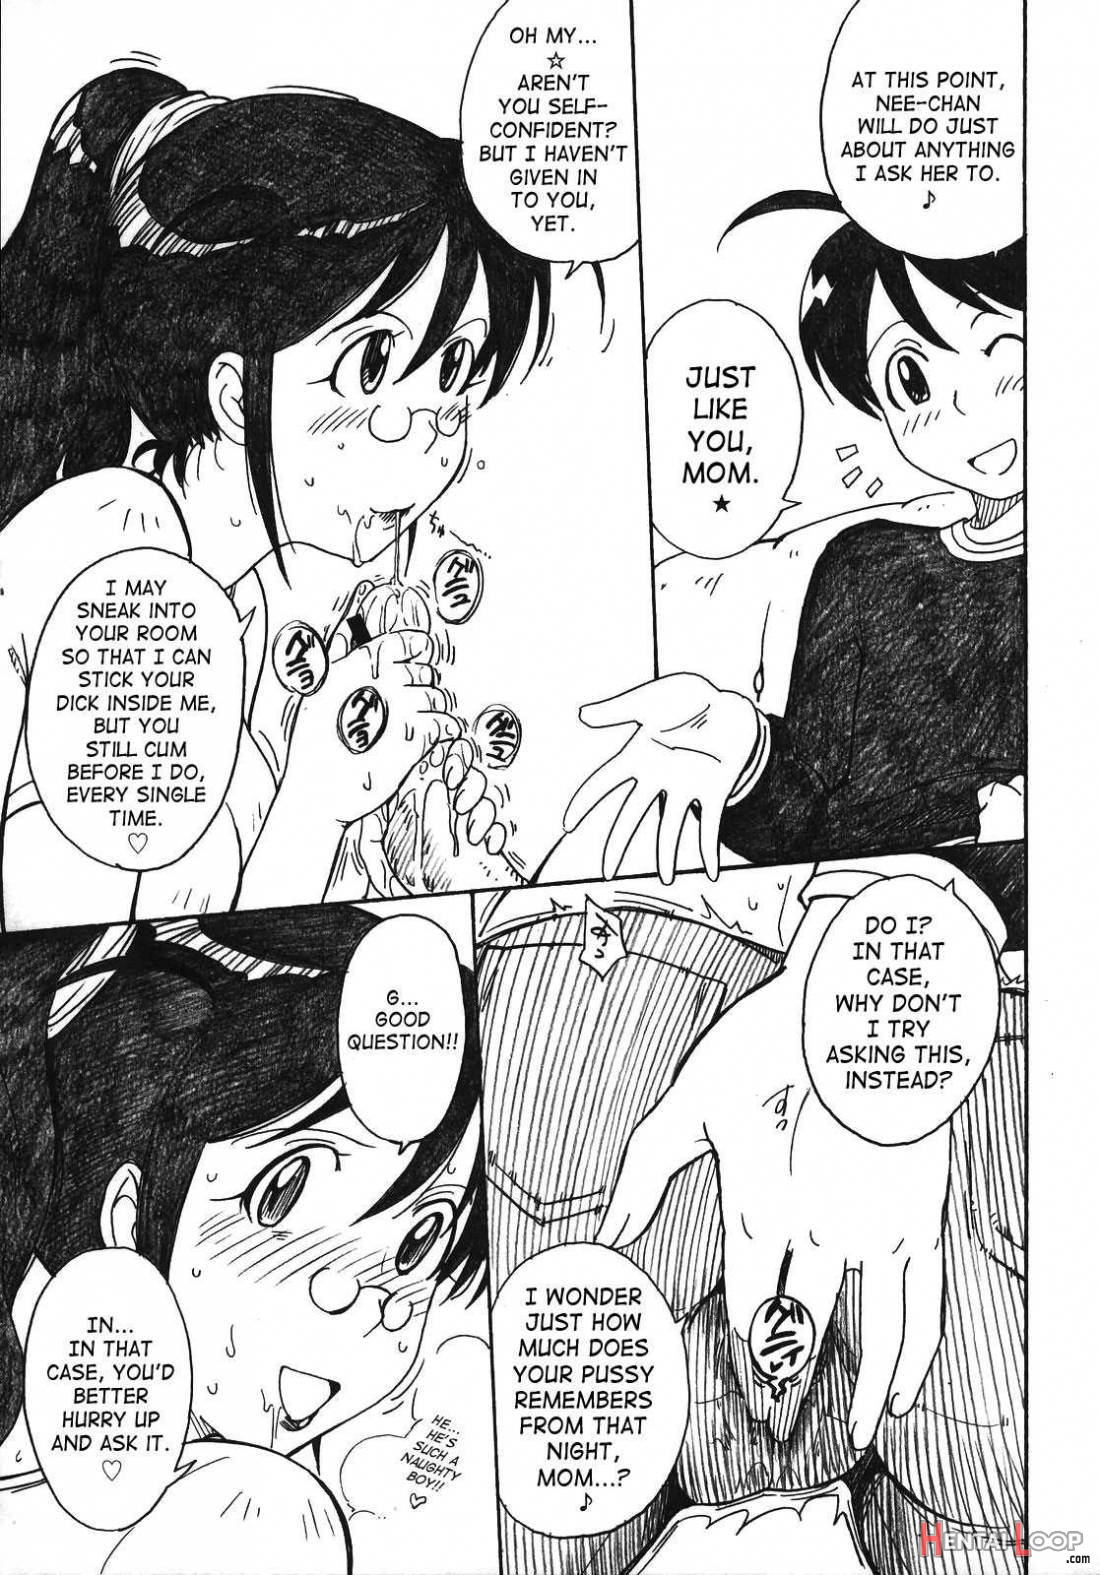 Kerorotic Na Akifuyumono page 5